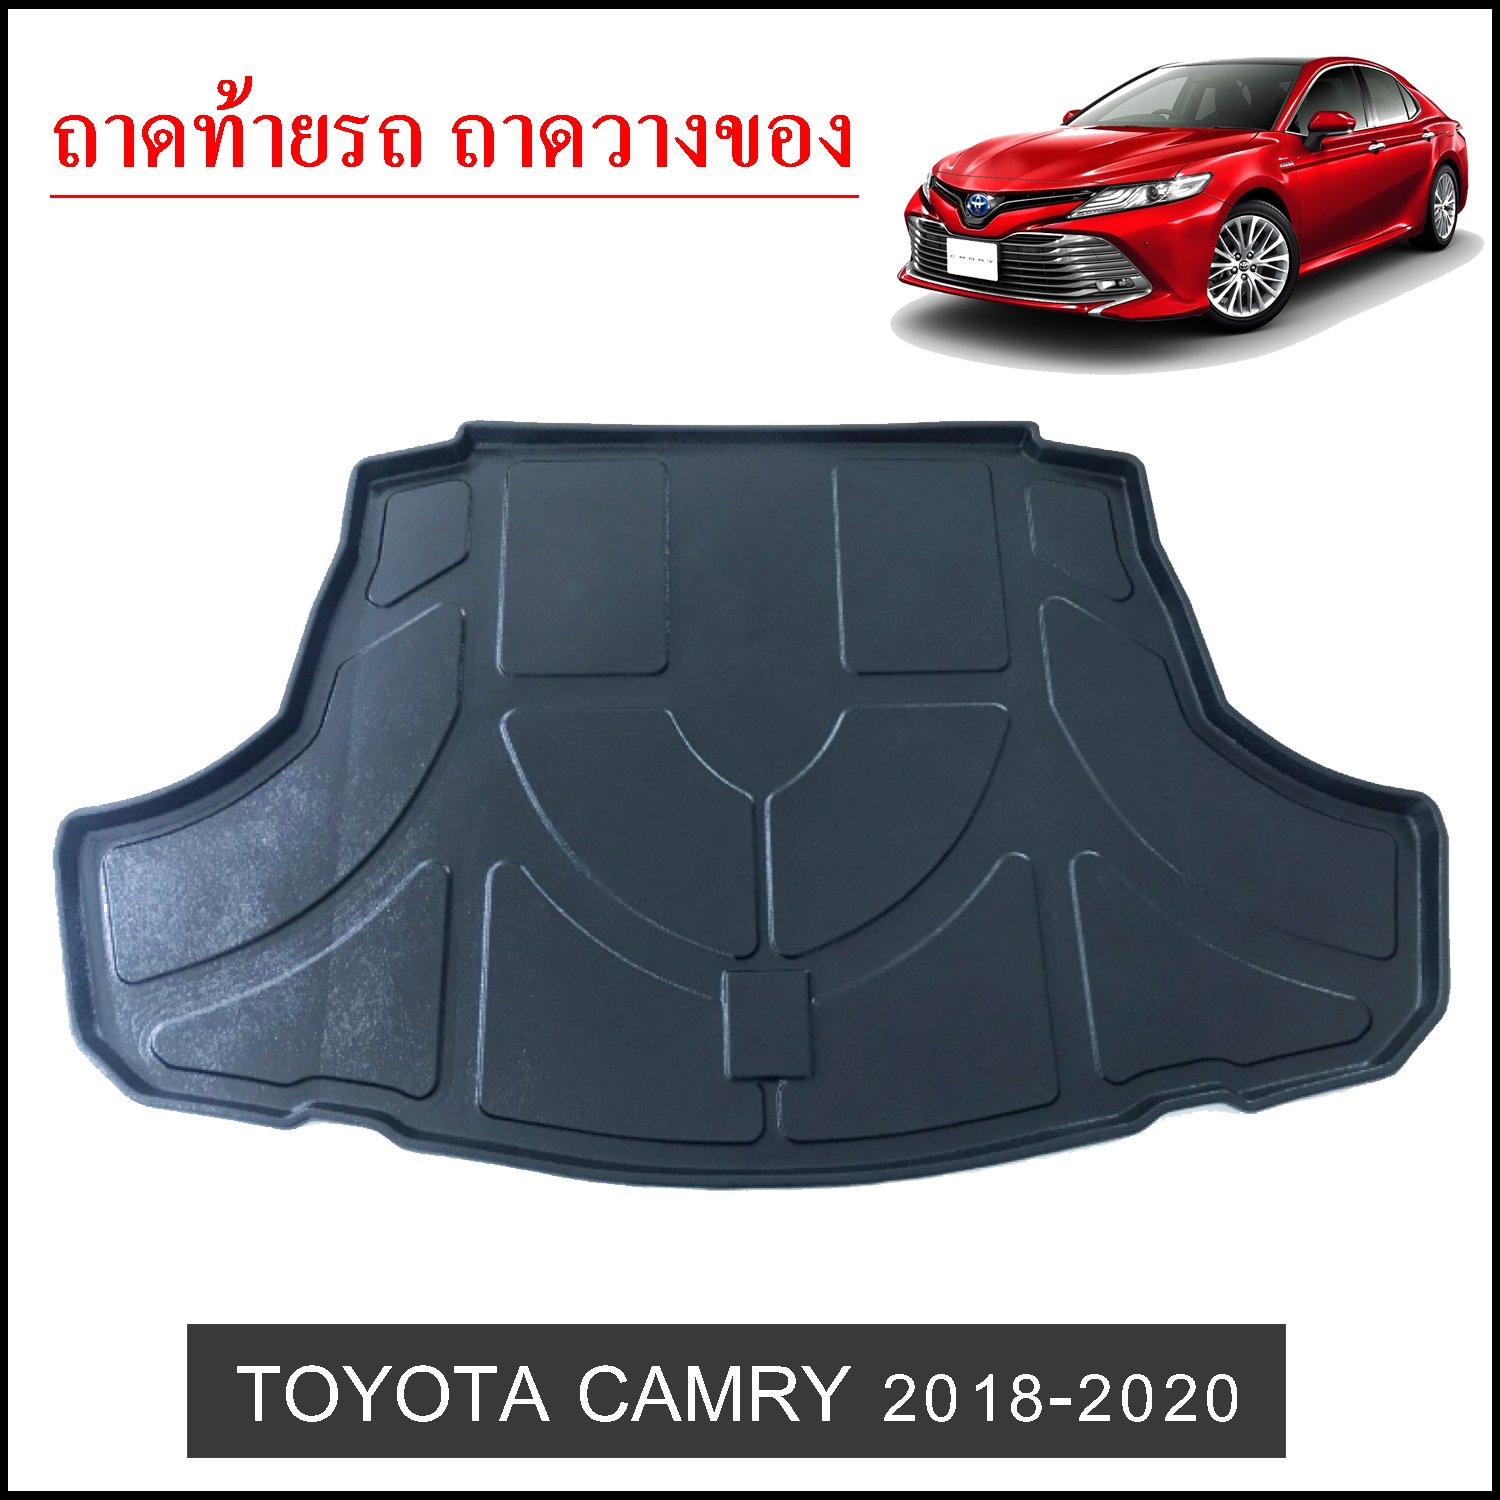 ถาดท้ายวางของ Toyota Camry 2018-2020